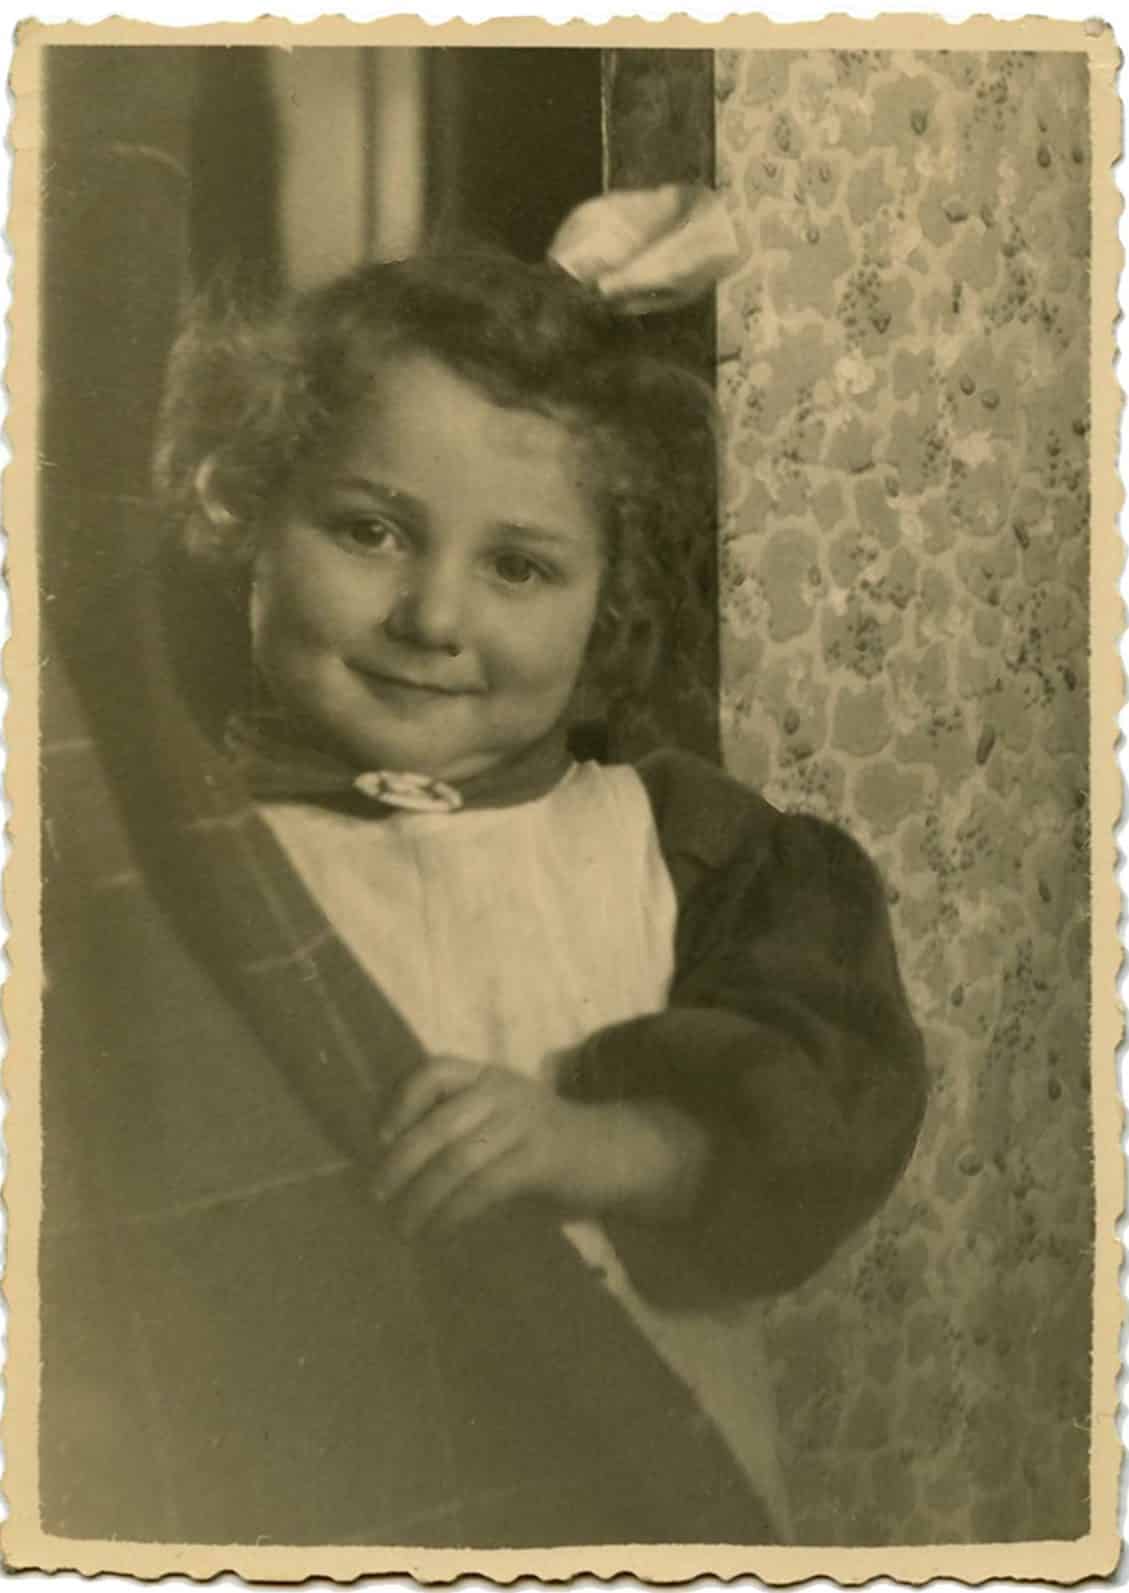 Wanda Wojciekiewicz i 4-5 års-alder